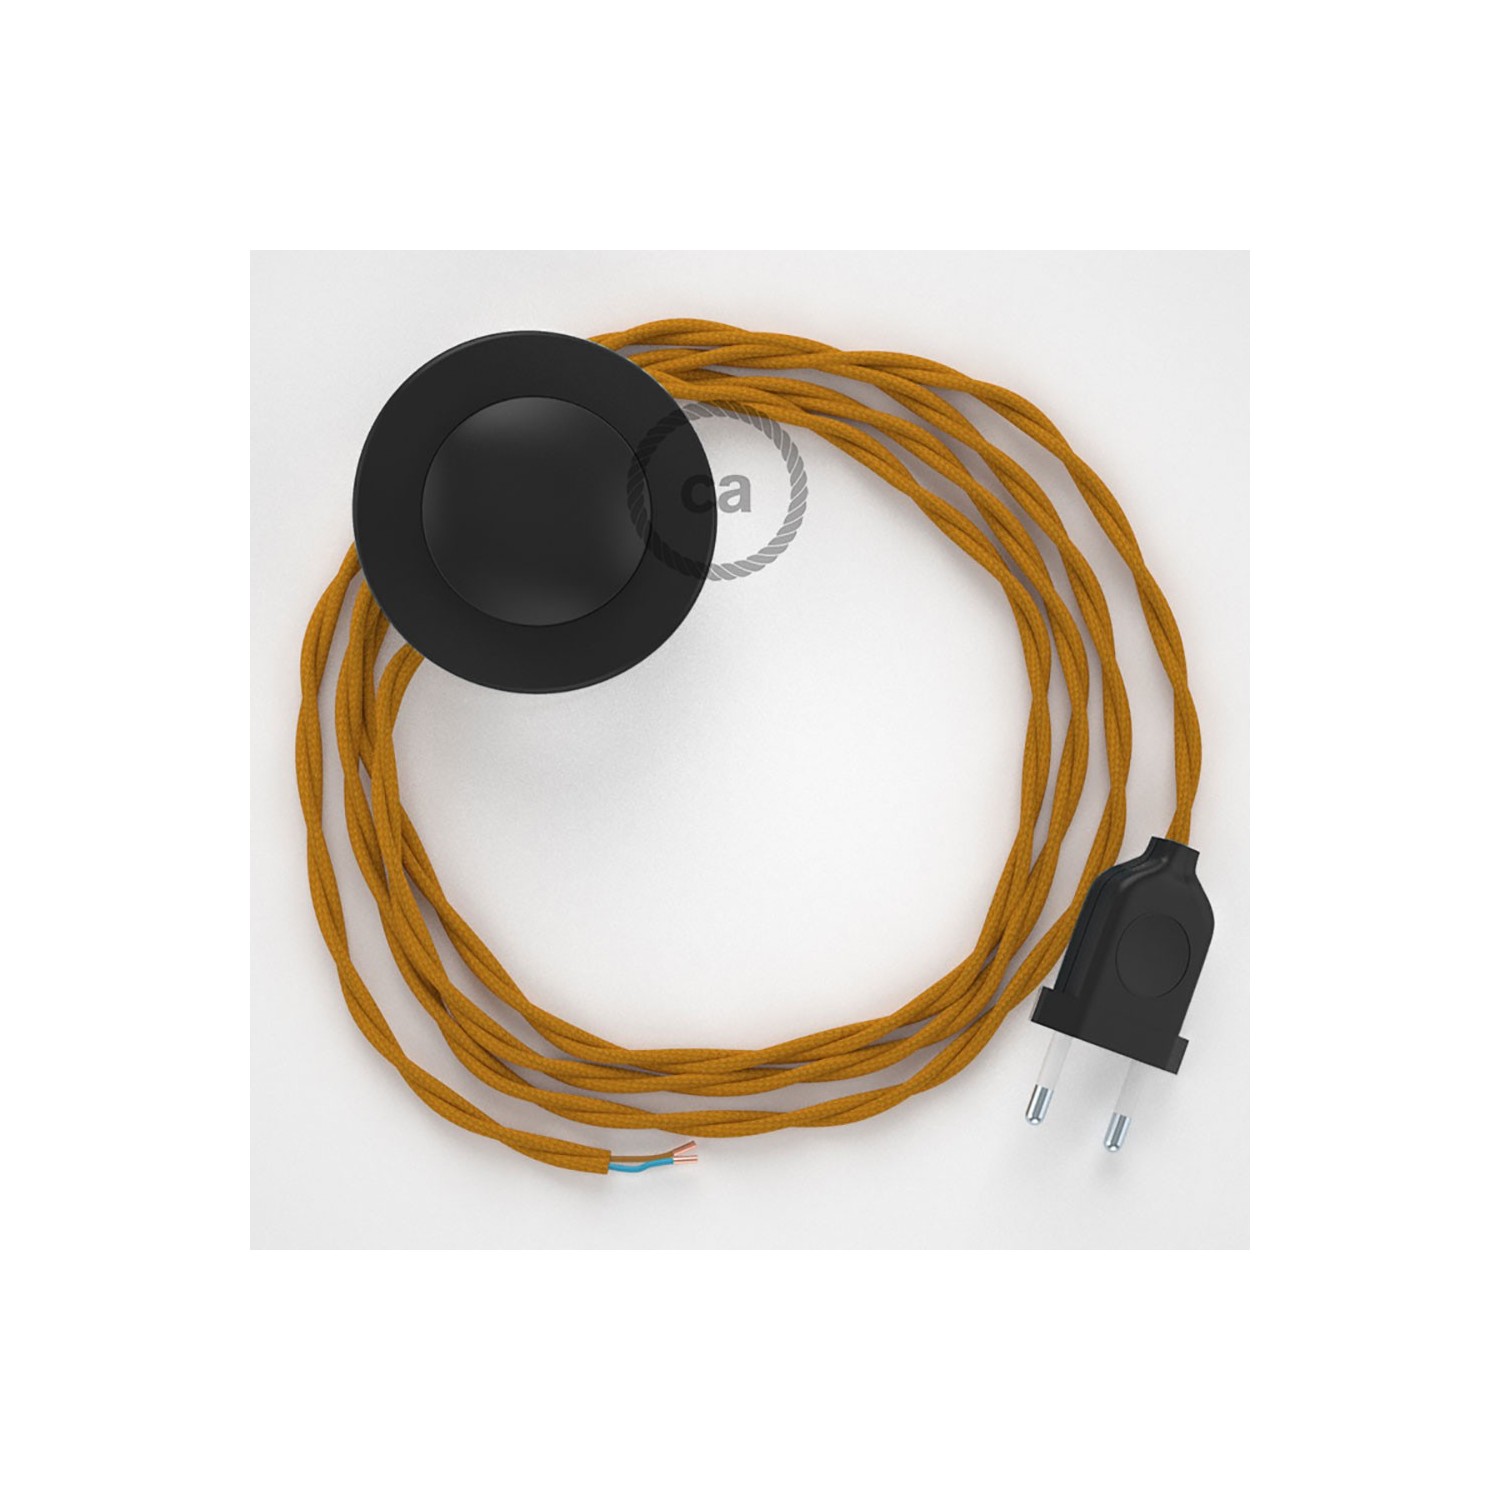 Cordon pour lampadaire, câble TM25 Effet Soie Moutarde 3 m. Choisissez la couleur de la fiche et de l'interrupteur!